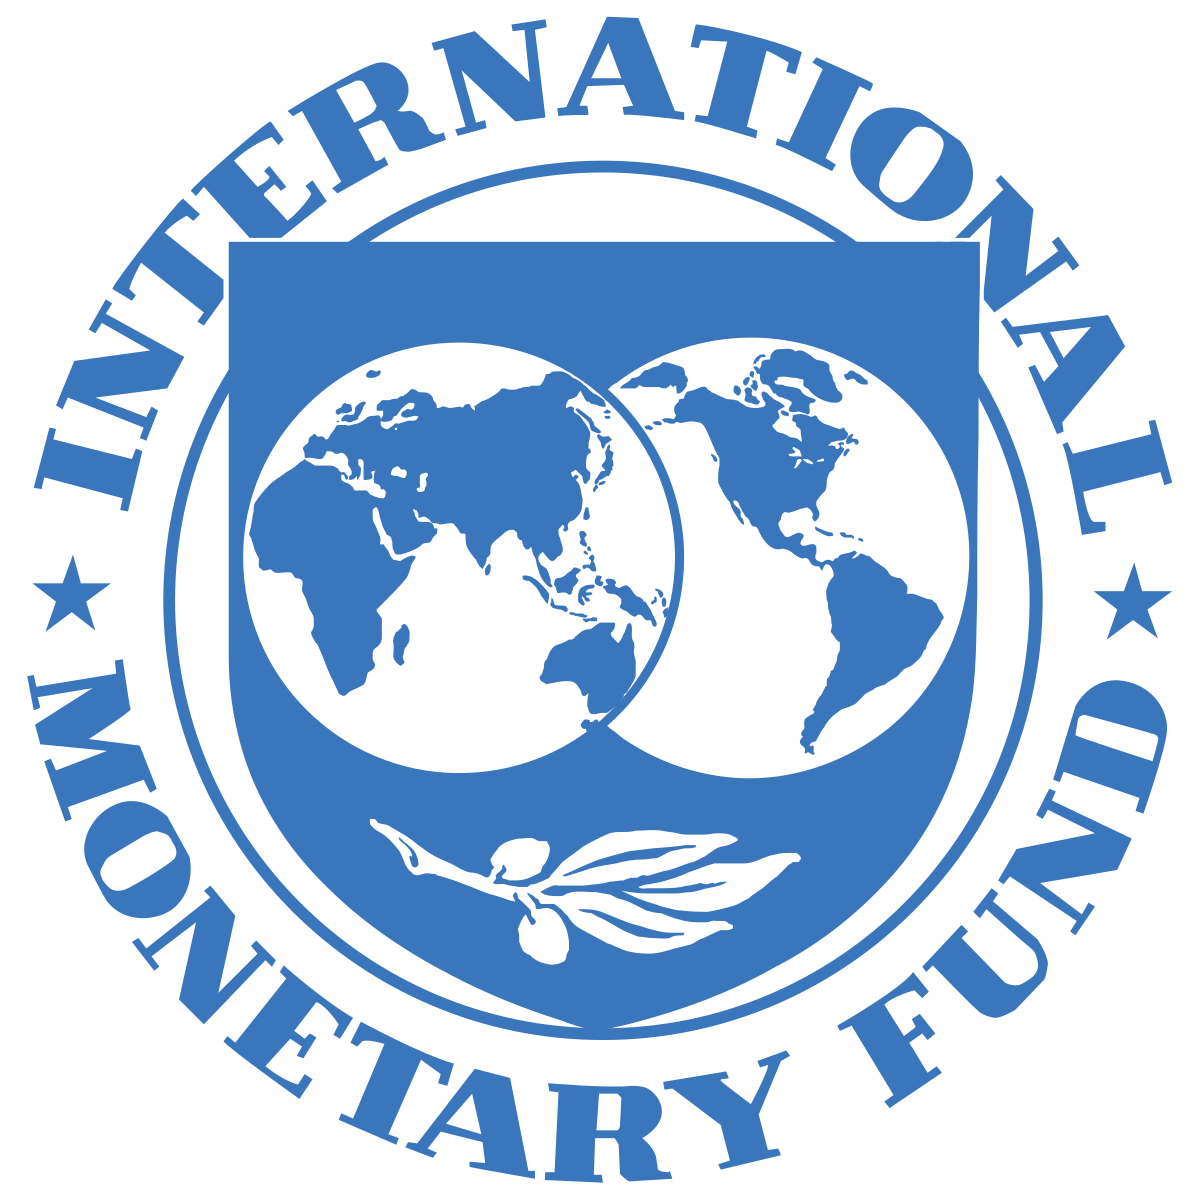 International Monetary Fund Logo